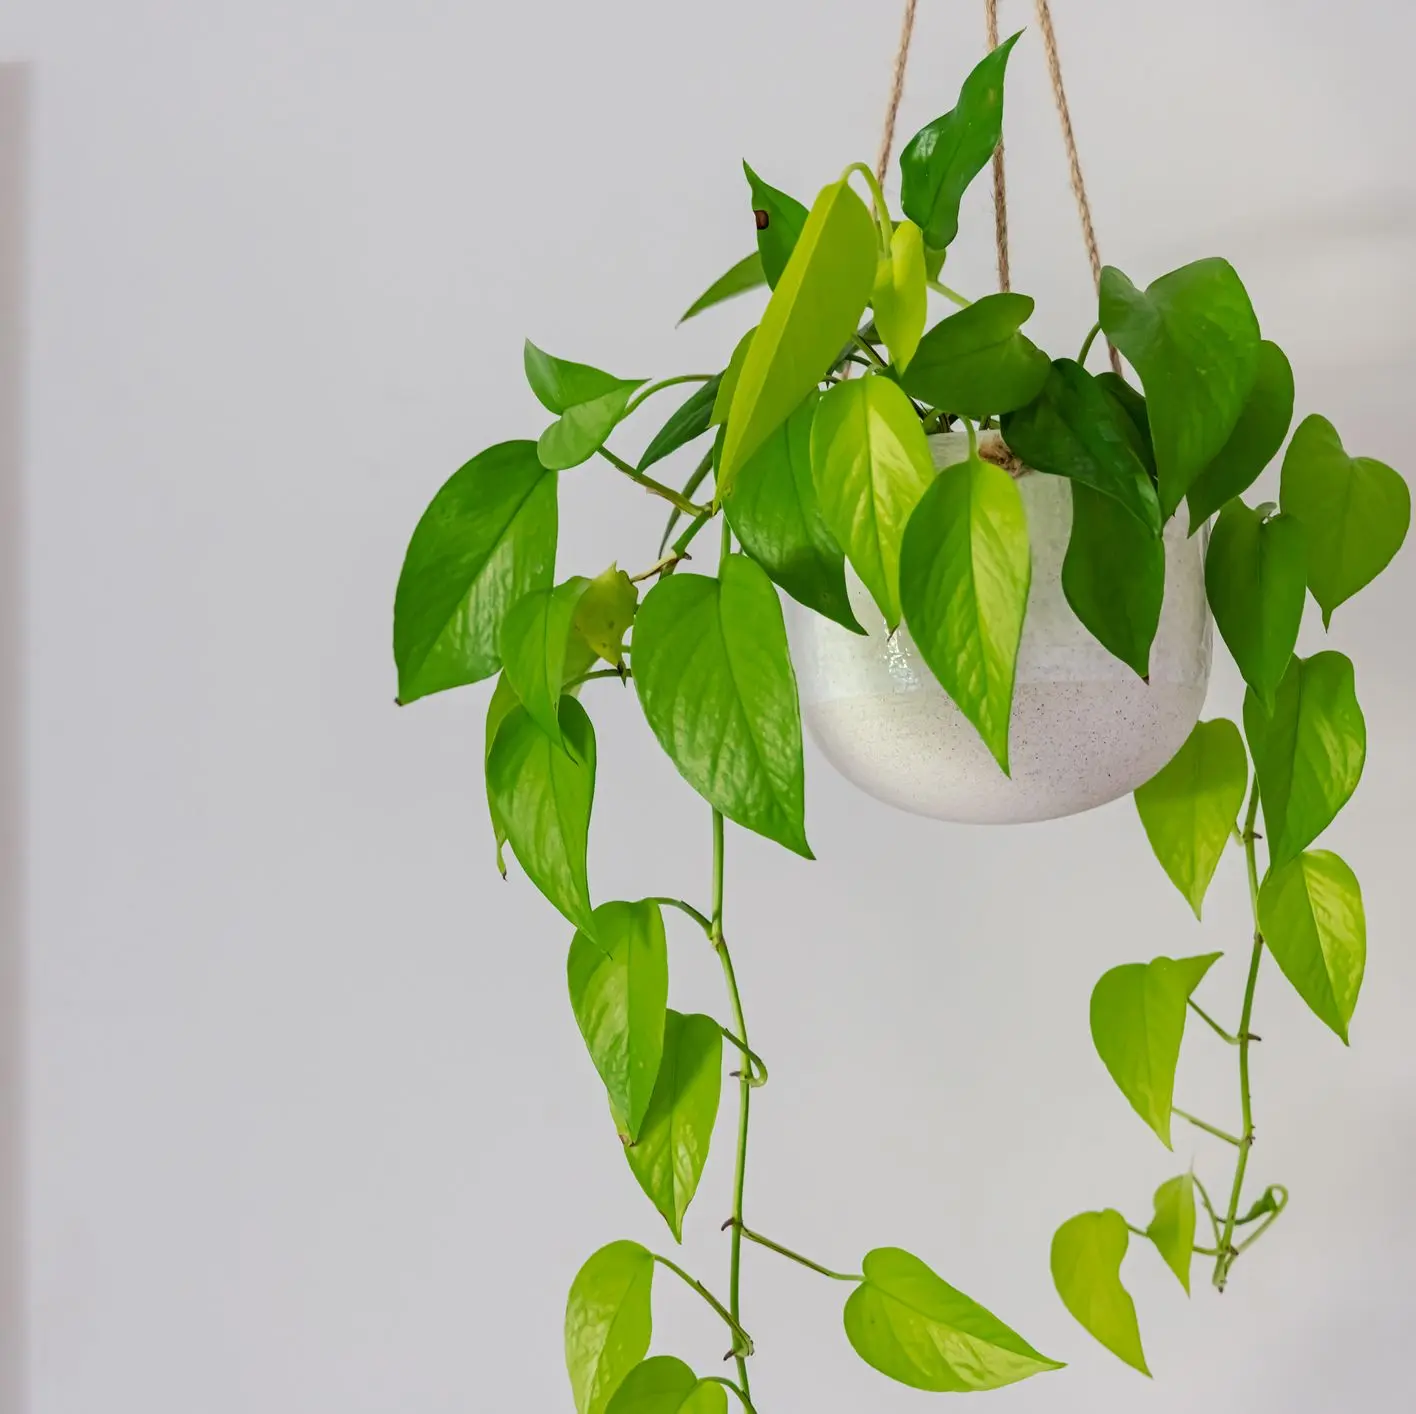 5种适合室内种植的居家盆栽 是“天然空气净化机” 摆对还能招财